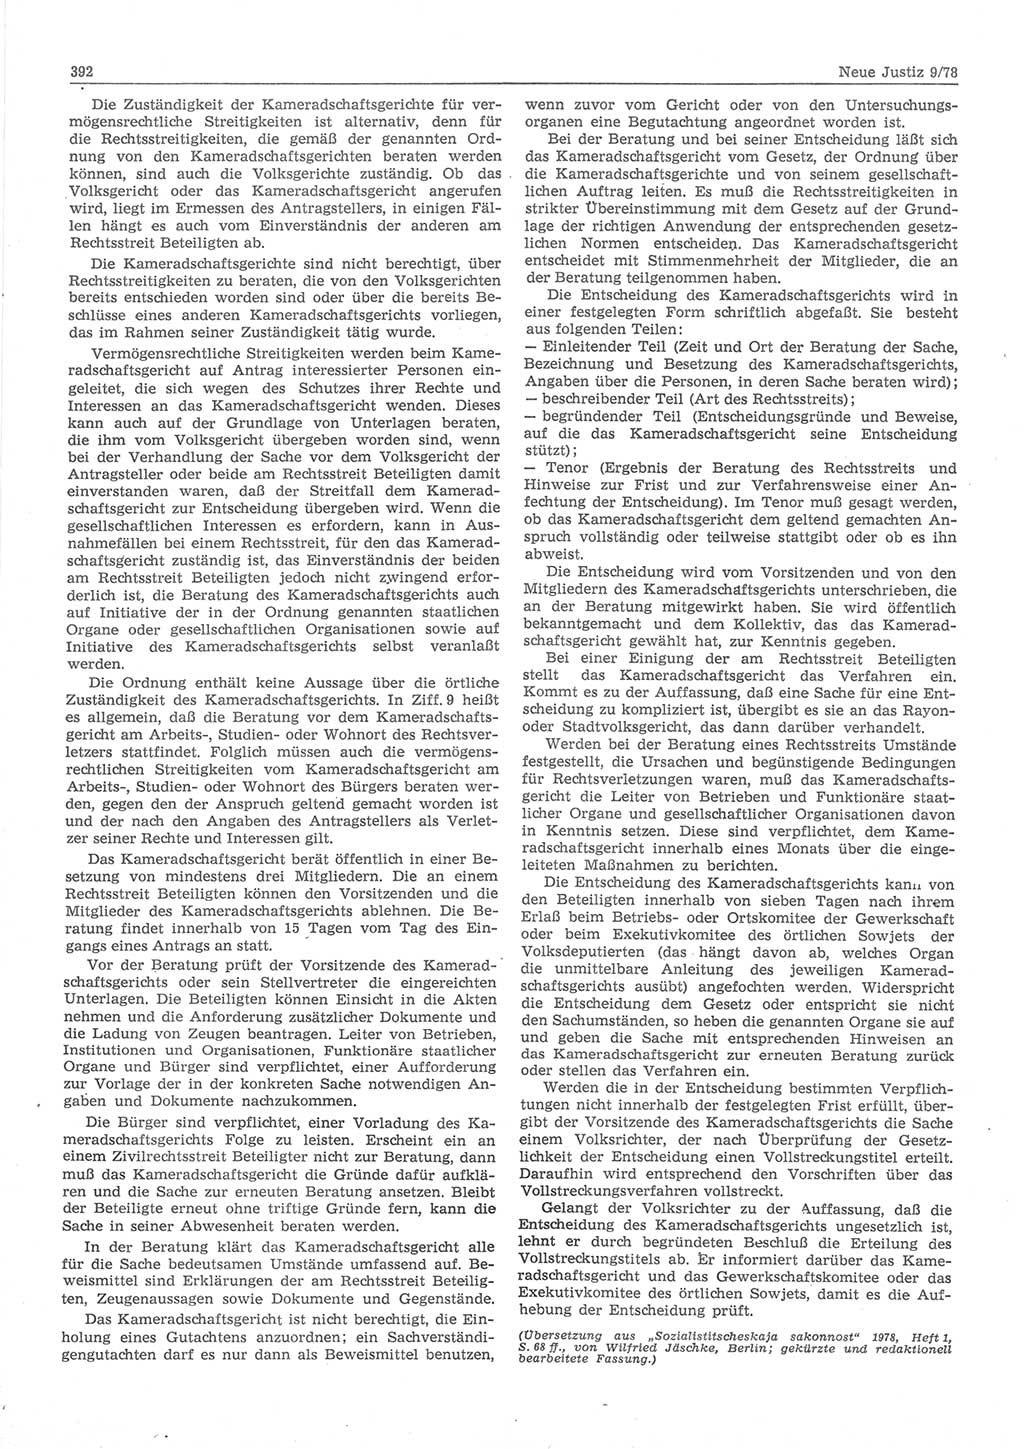 Neue Justiz (NJ), Zeitschrift für sozialistisches Recht und Gesetzlichkeit [Deutsche Demokratische Republik (DDR)], 32. Jahrgang 1978, Seite 392 (NJ DDR 1978, S. 392)